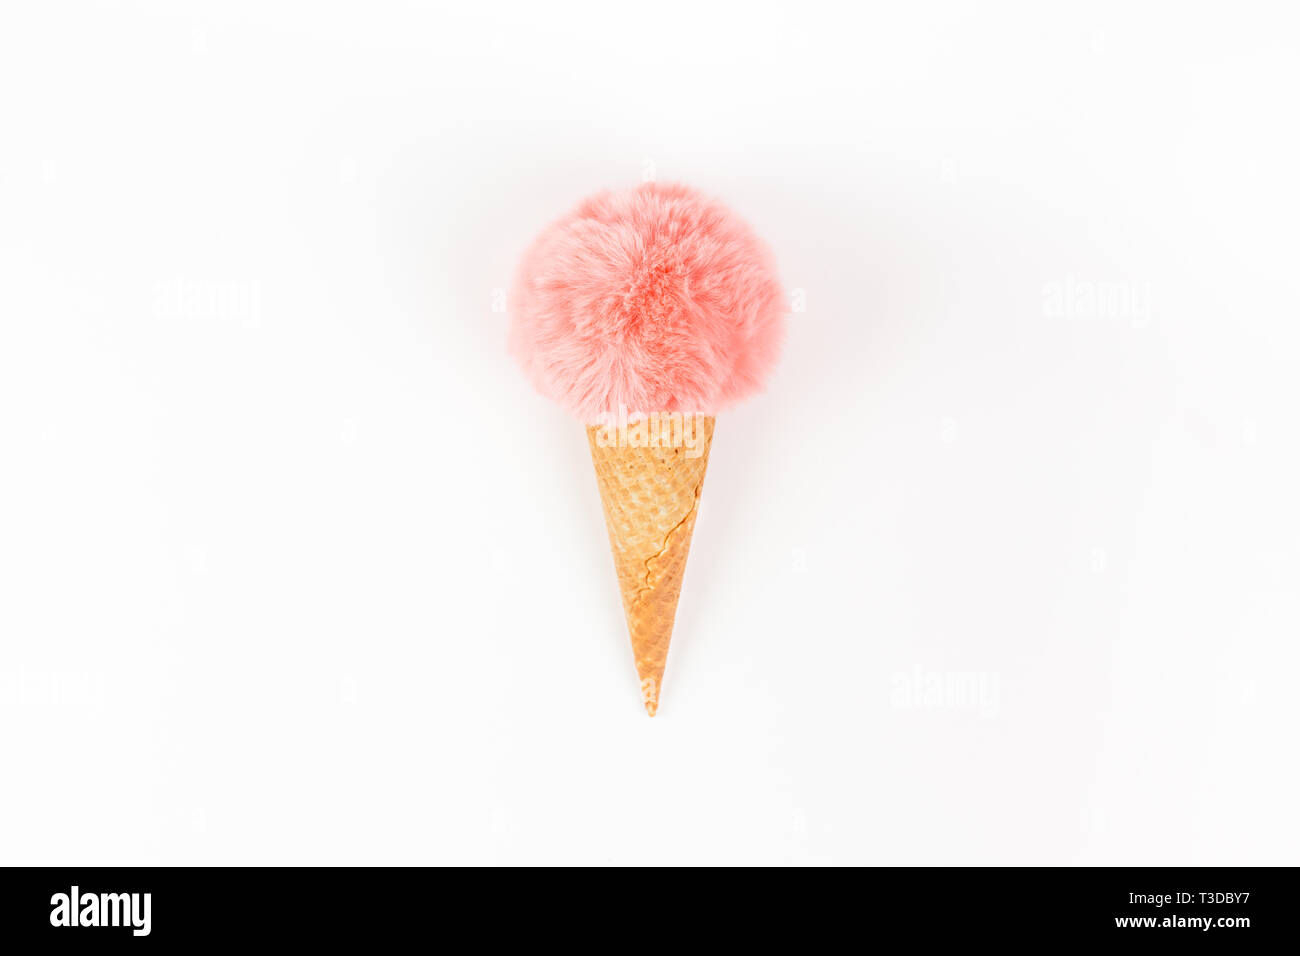 Kreative, oben flach der Koralle Farbe flauschige Fell Kugel Eis Waffel Kegel mit Kopie Raum auf weißem Hintergrund im minimalistischen Stil. Konzept femin Stockfoto